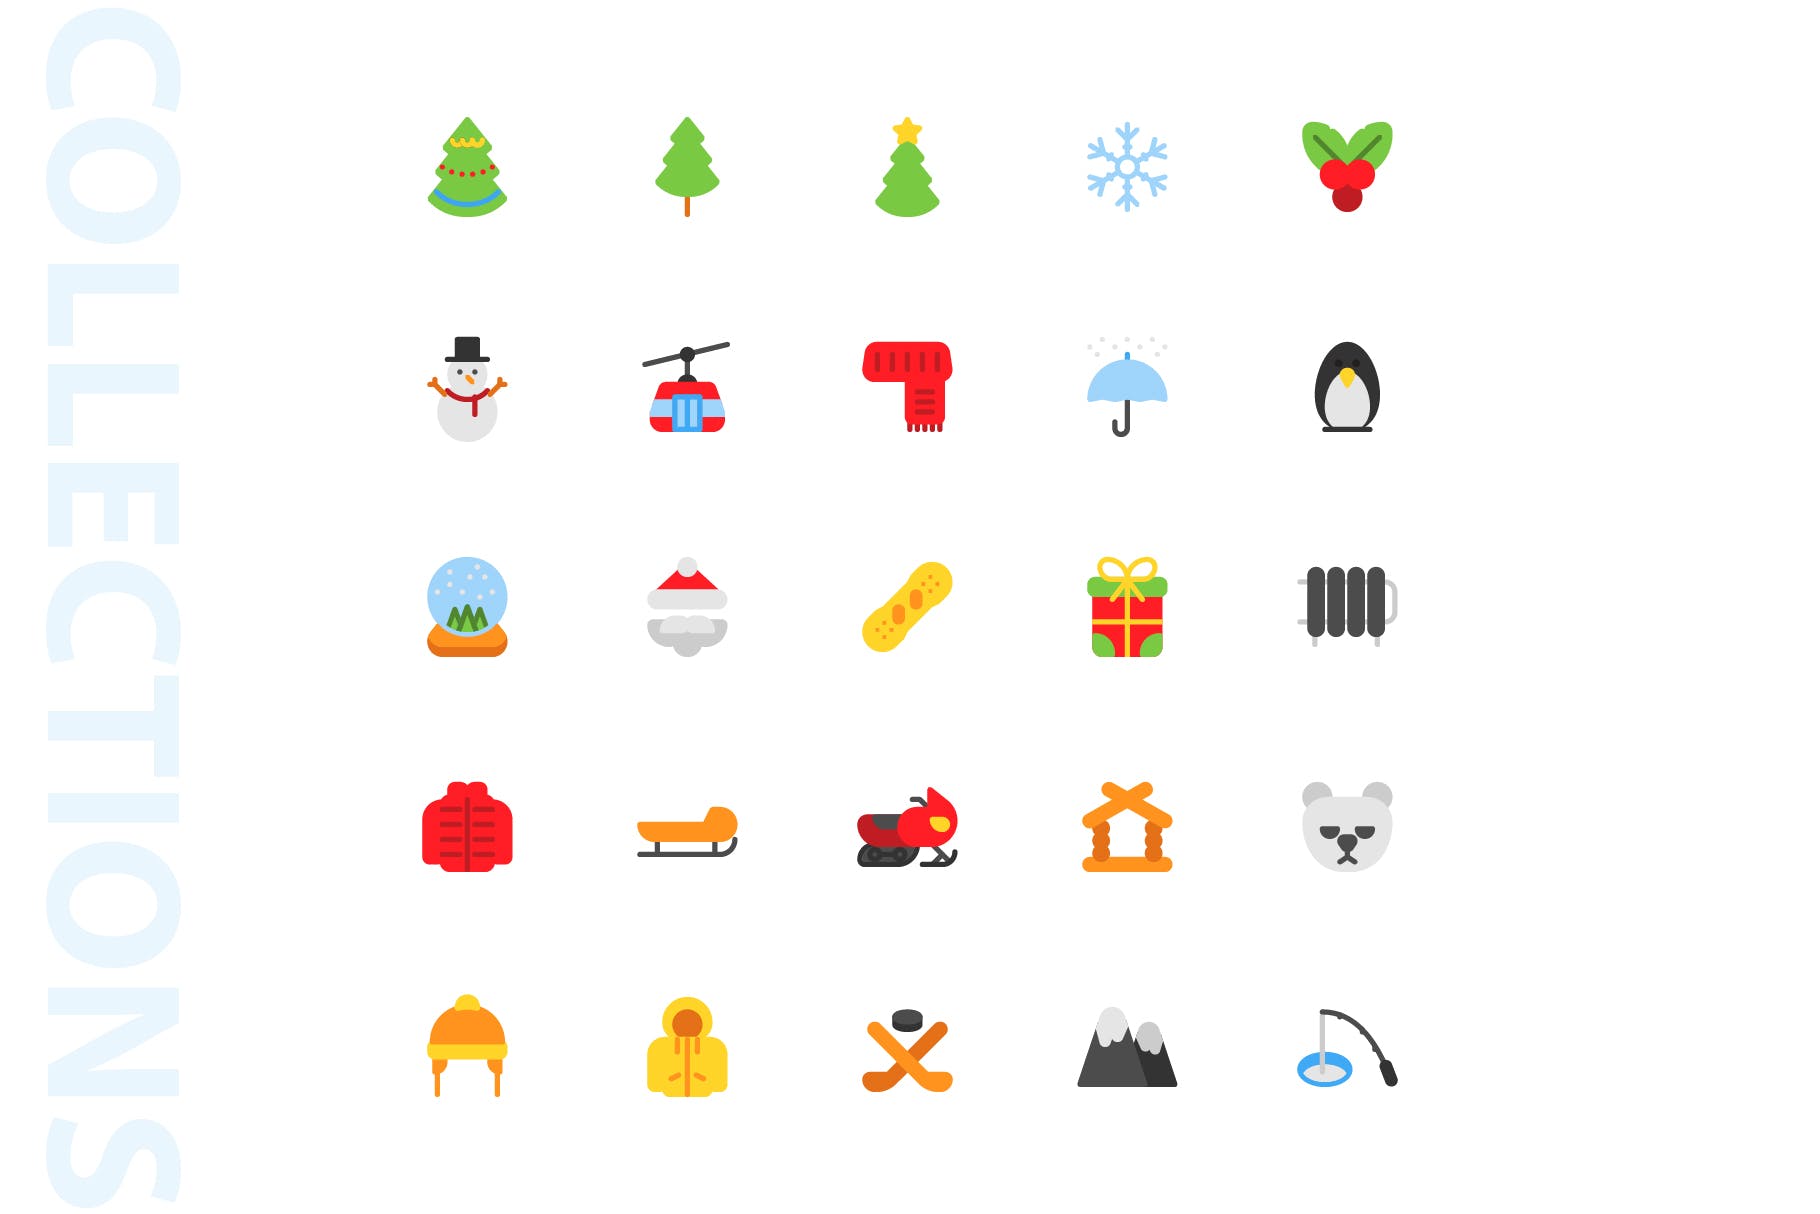 25枚冬天主题扁平设计风格矢量蚂蚁素材精选图标v1 Winter Flat Icons插图(3)